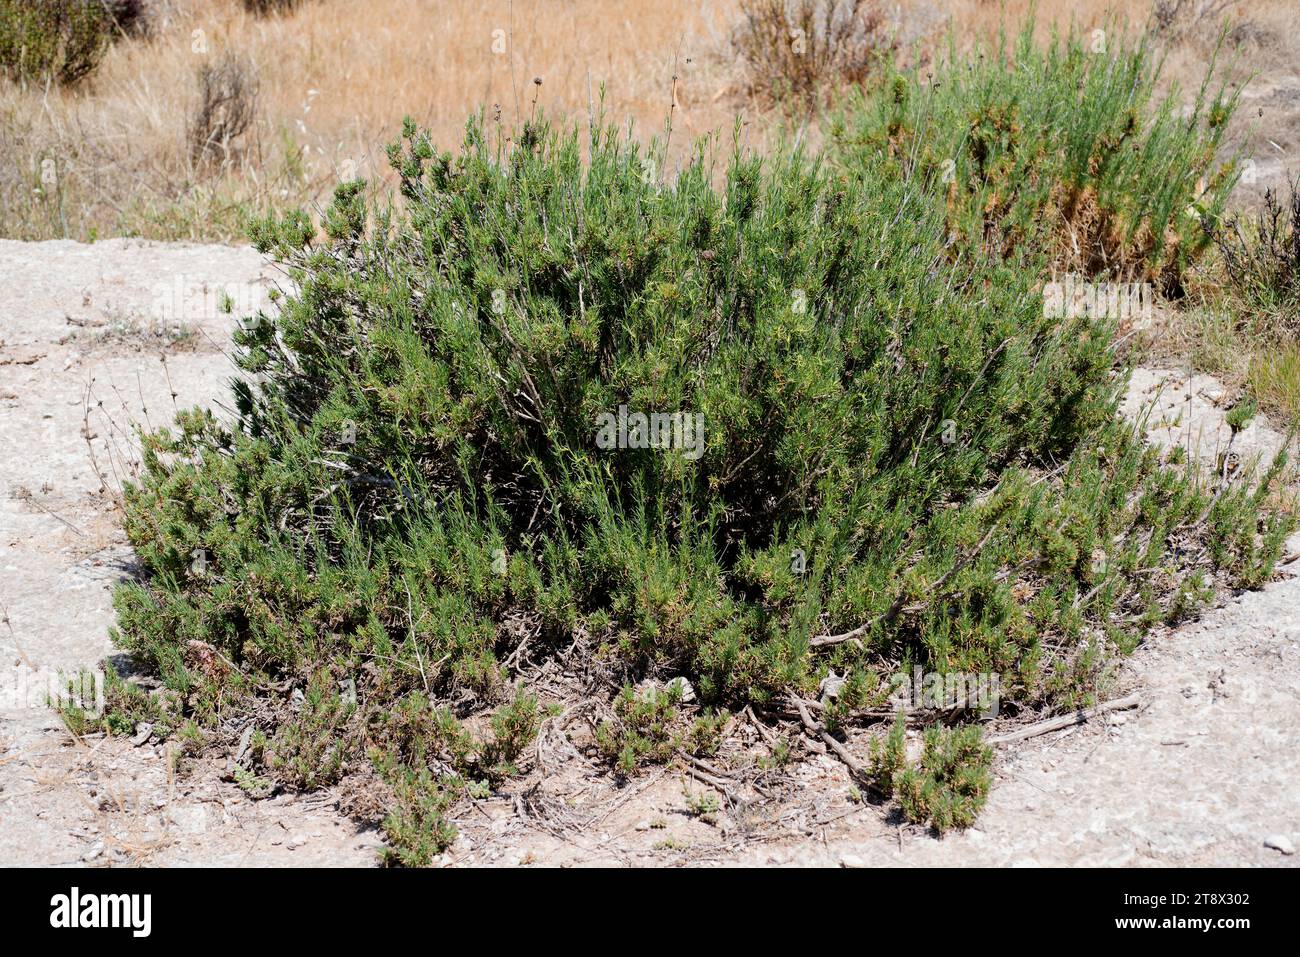 Albada o jabonera (Gypsophila sthrutium) ist eine auf der iberischen Halbinsel endemische Gipspflanze. Dieses Foto wurde in Karst en yesos de Sorbas in Almeria aufgenommen Stockfoto